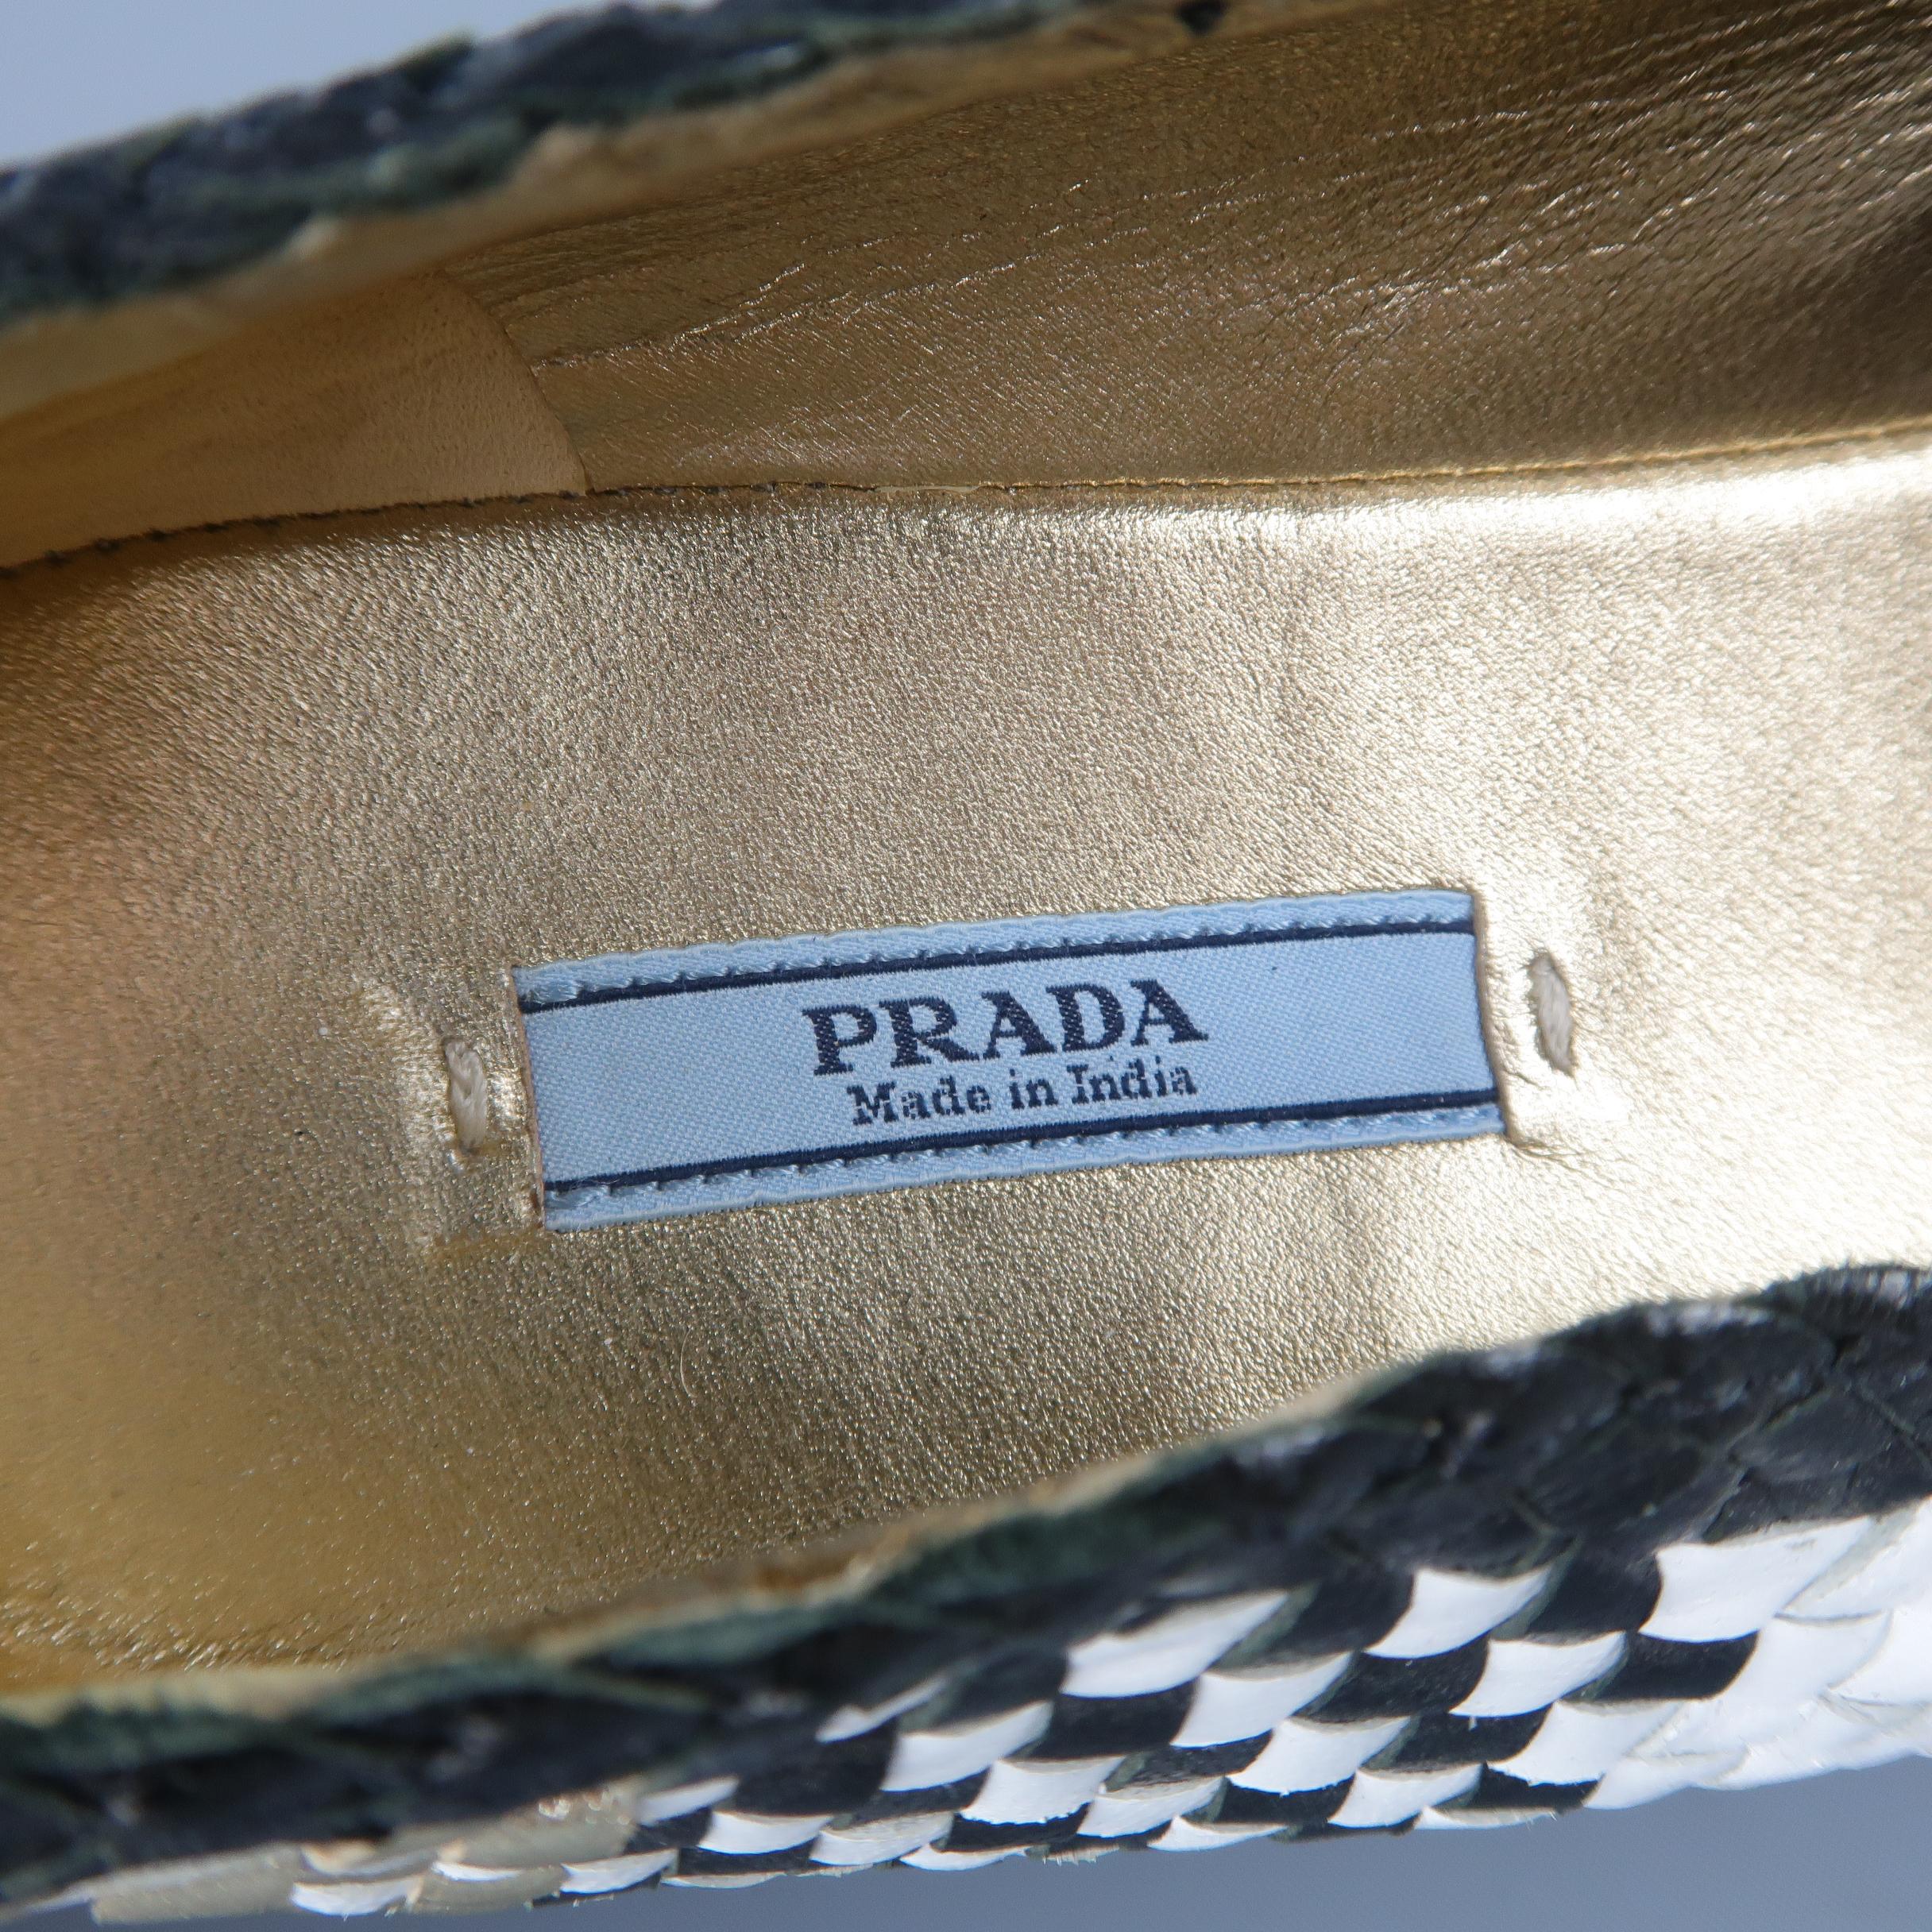 PRADA Size 7.5 Black White & Gold Woven Plaid Leather Espadrille 1